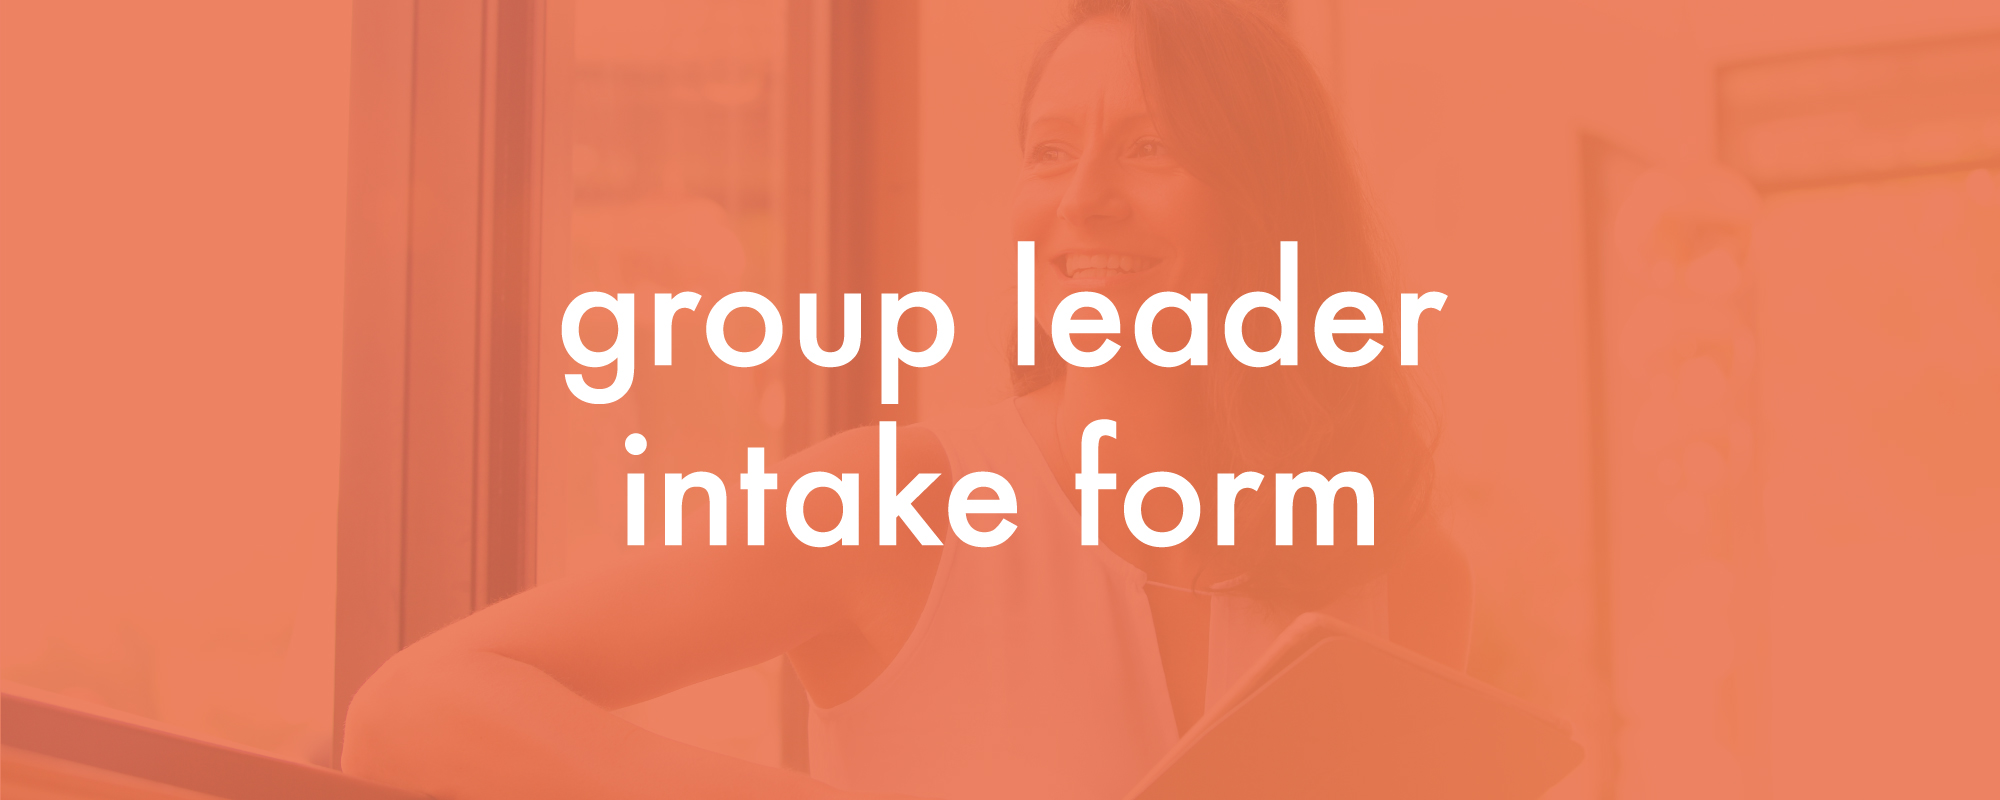 17-0718-Groups17-group-leader-intake.jpg